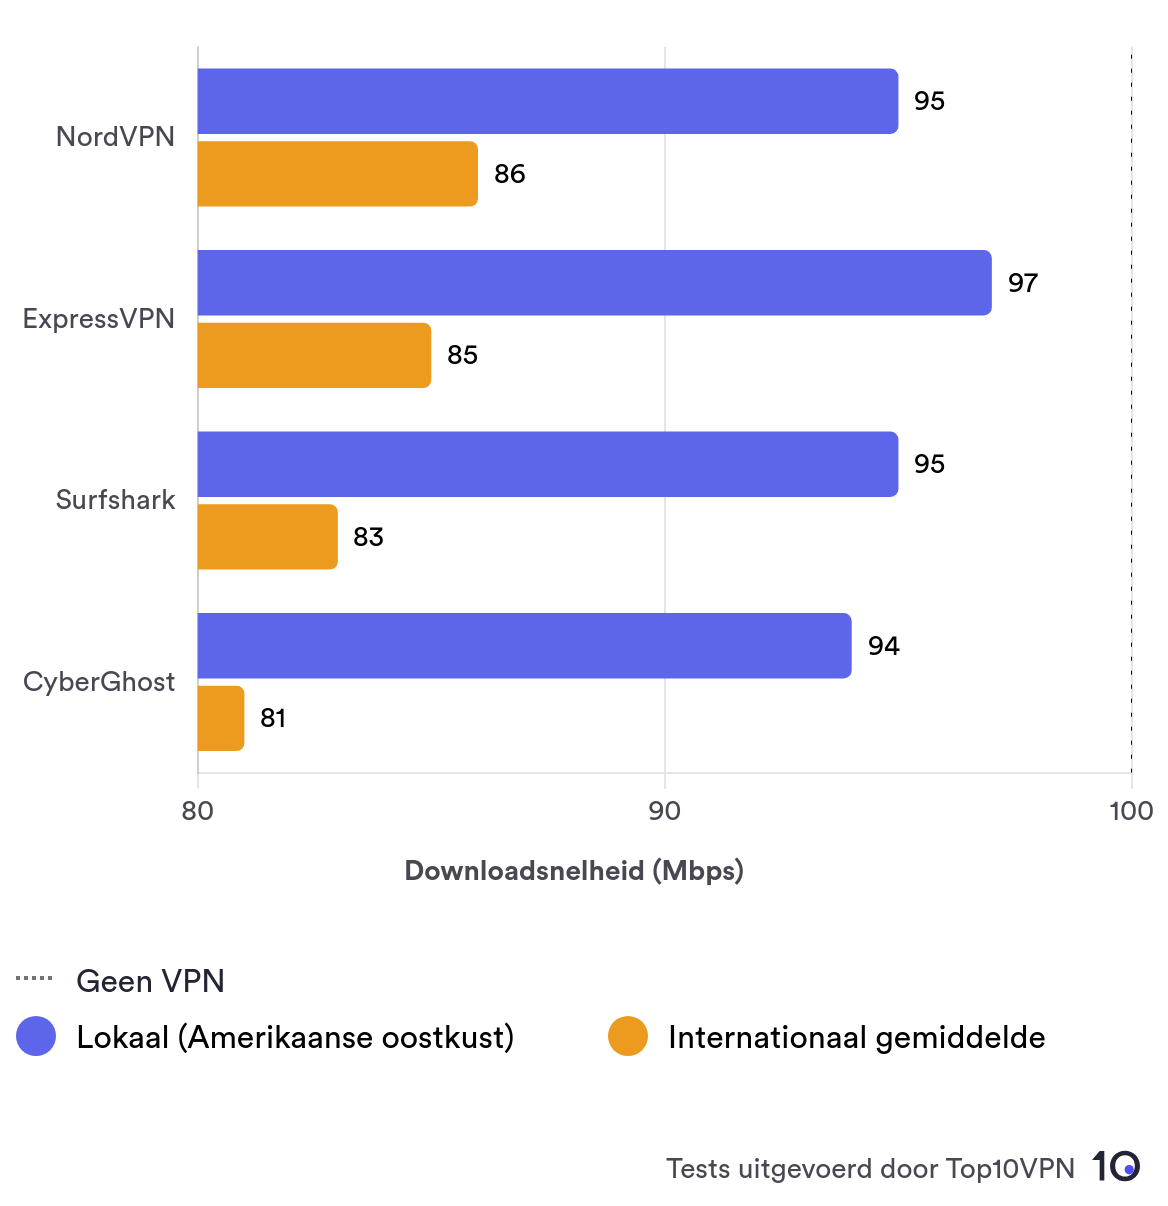 Vergelijkend staafdiagram dat de lokale en gemiddelde internationale snelheidsprestaties van NordVPN laat zien in vergelijking met andere top VPN-aanbieders.